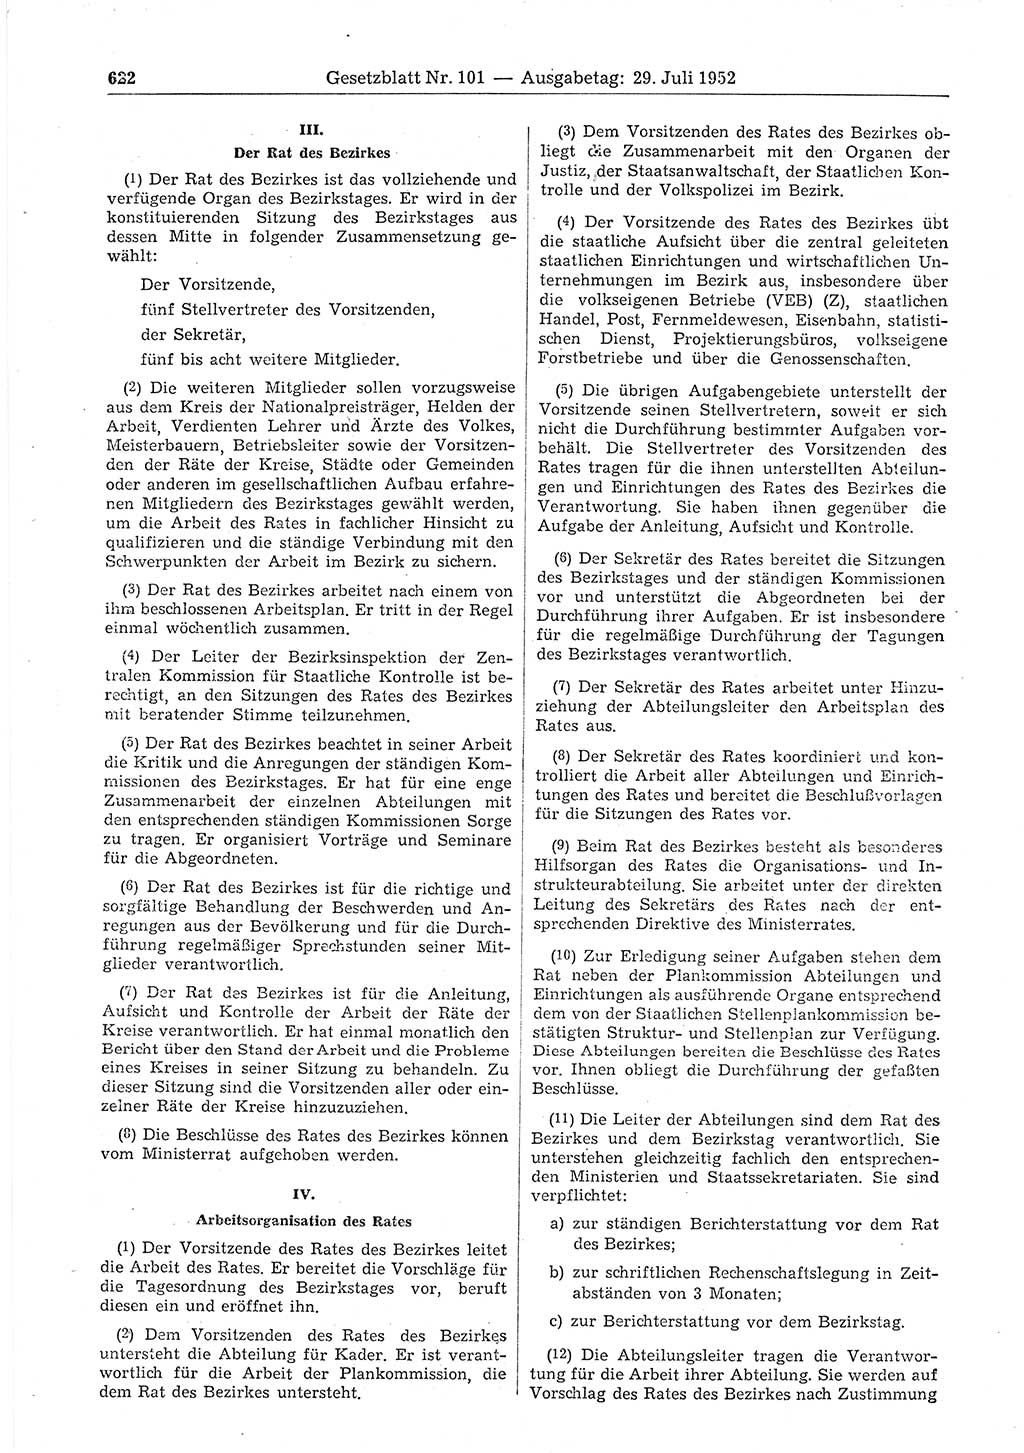 Gesetzblatt (GBl.) der Deutschen Demokratischen Republik (DDR) 1952, Seite 622 (GBl. DDR 1952, S. 622)